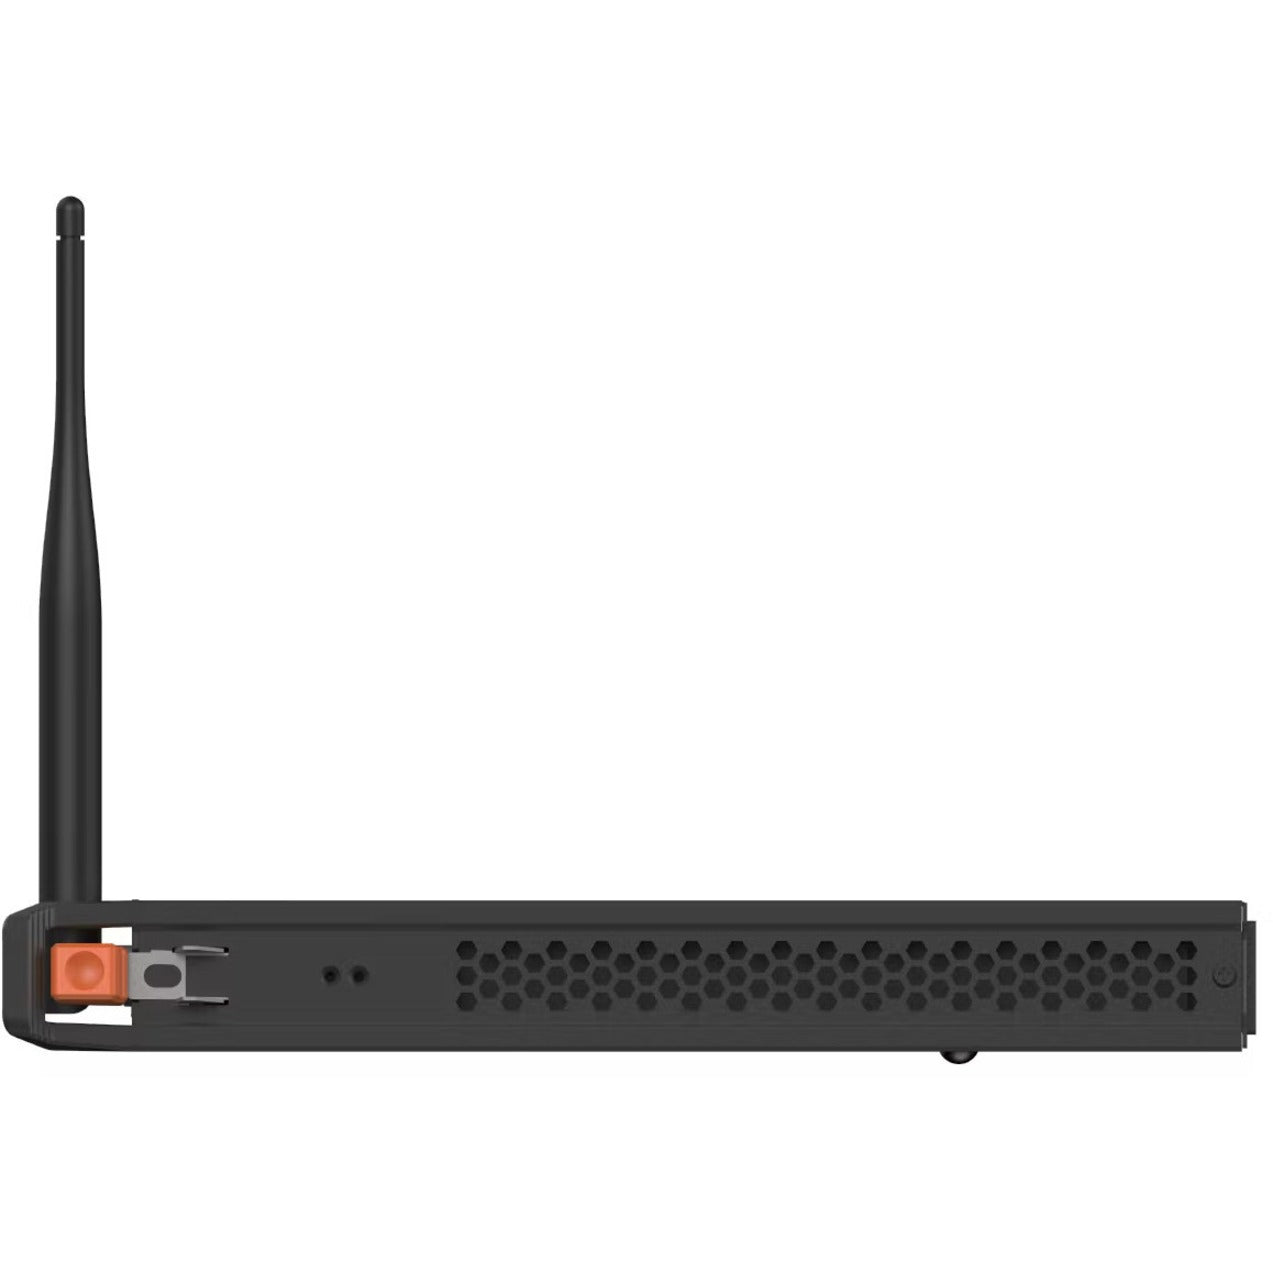 InFocus PC-I7-10700-16256 Single Board Computer, 16GB RAM, 256GB SSD, HDMI, DisplayPort, 7 USB Ports